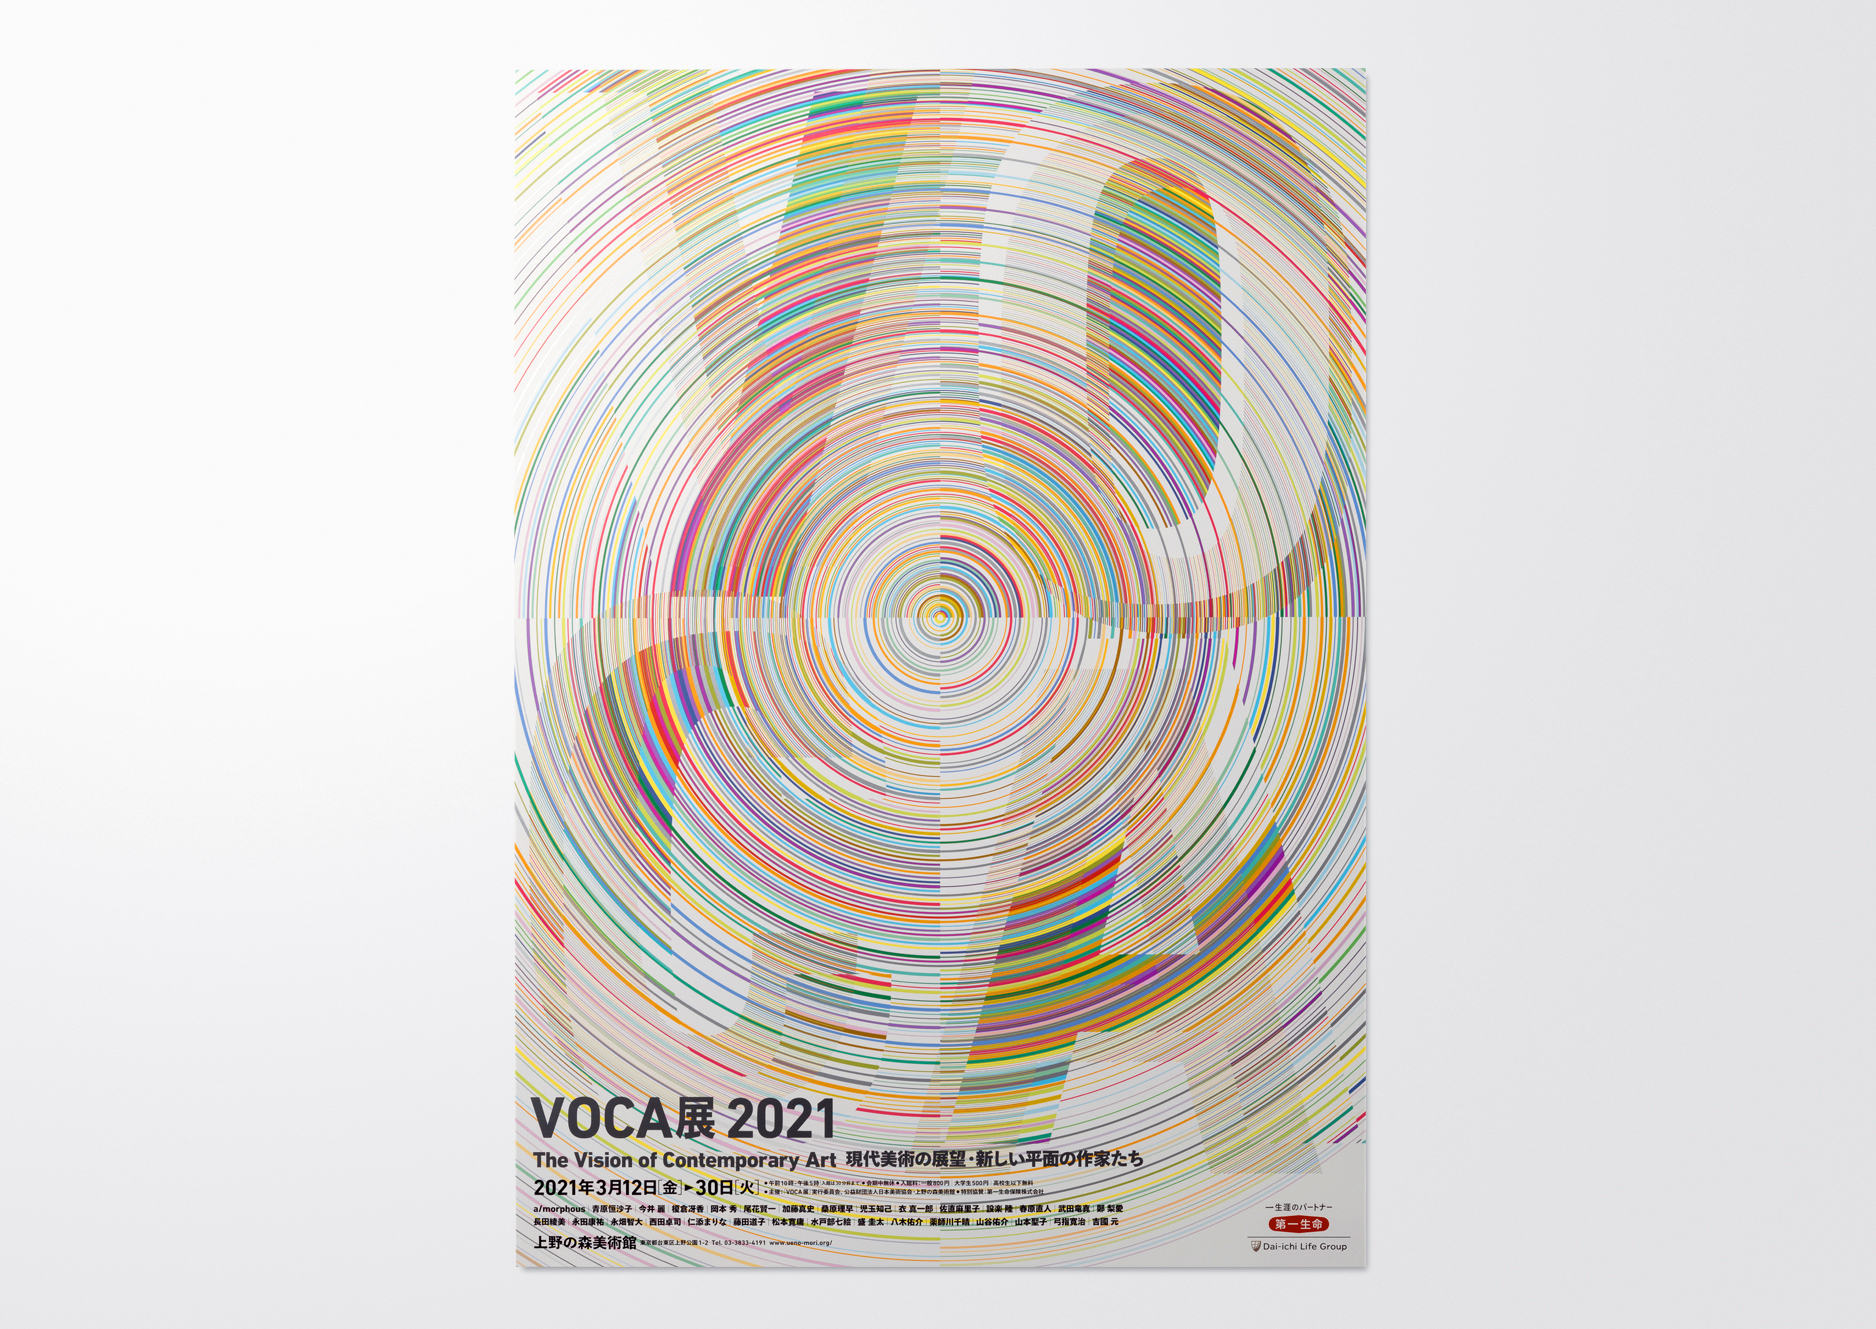 2021_voca2021_ポスター1